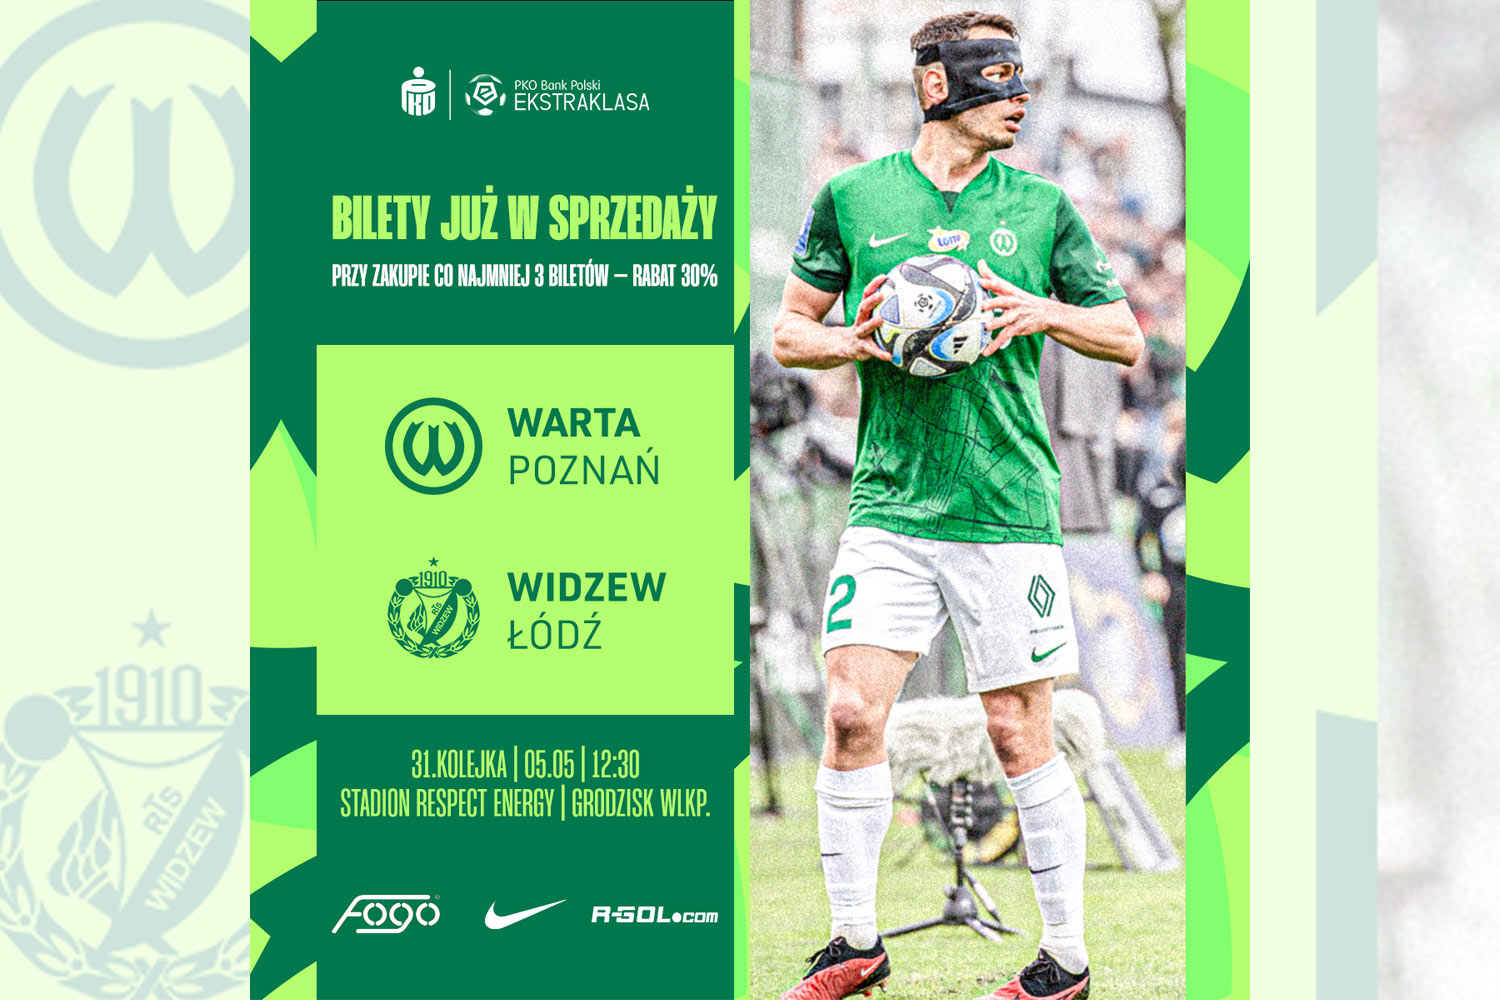 Kup bilet na mecz Warta Poznań - Widzew Łódź